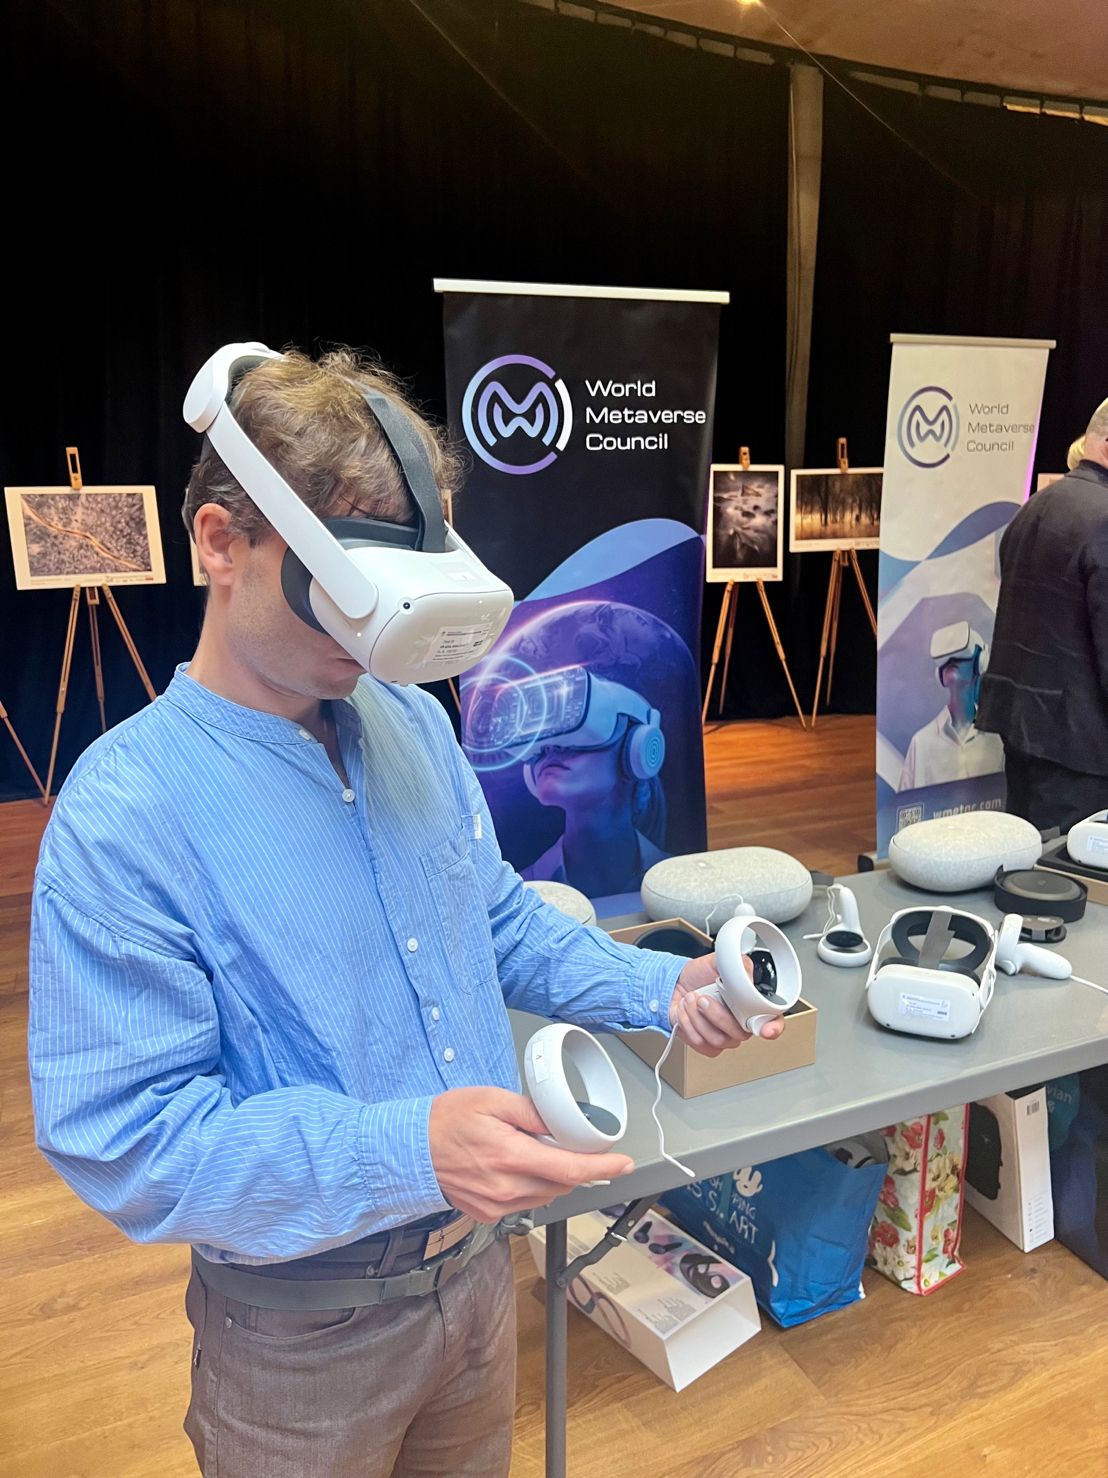 Moški z očali za virtualni resničnost, v rokah drži pripomočke za očala